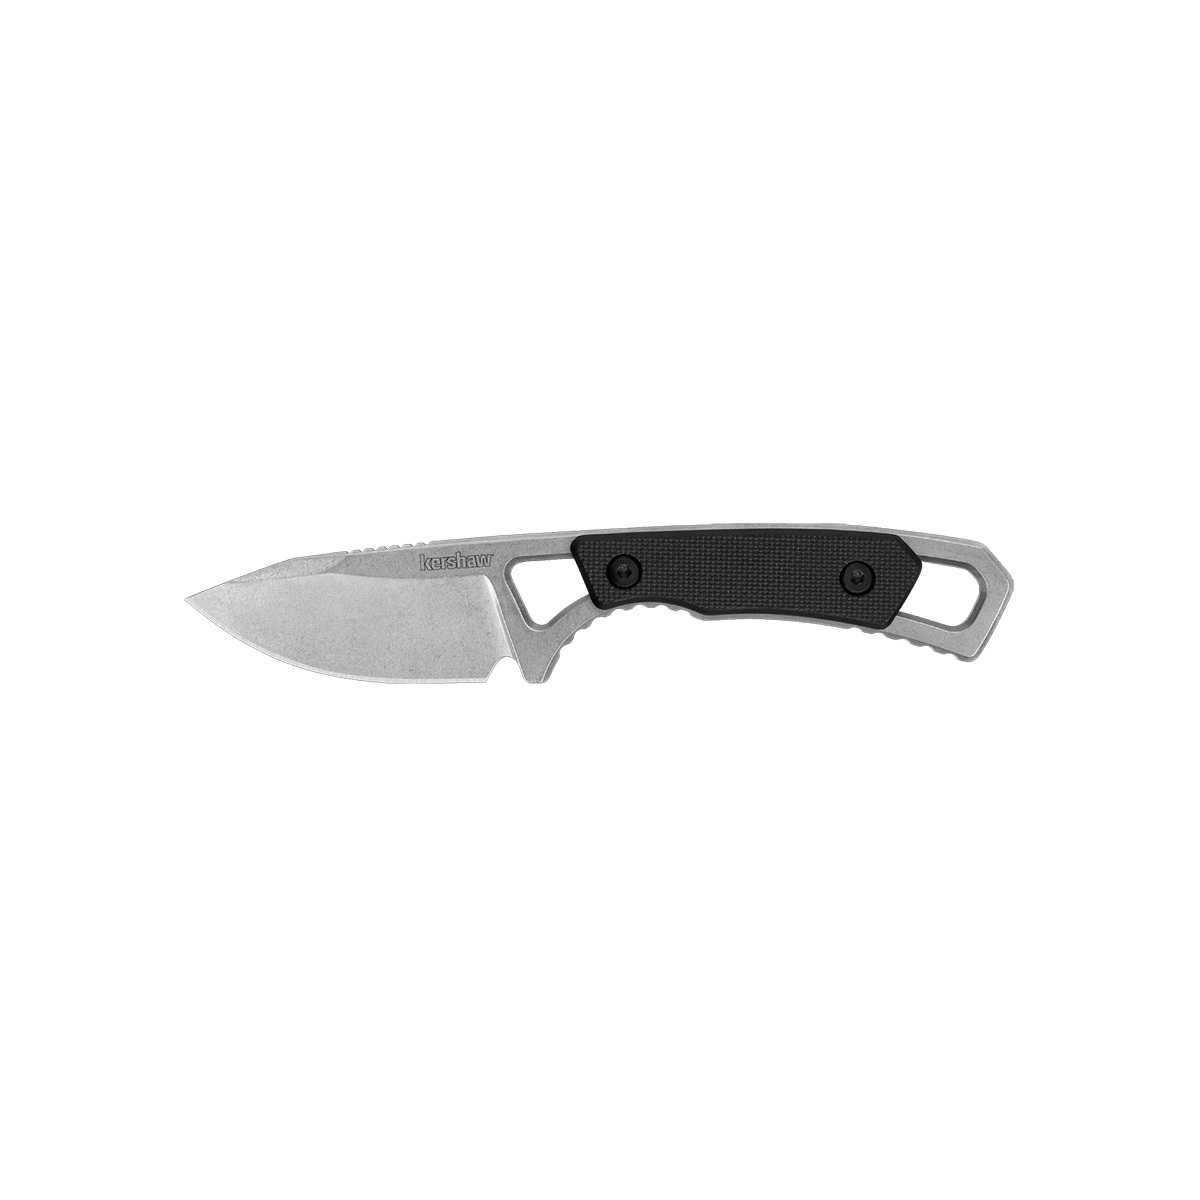 Нож Kershaw Brace 2085, сталь 8Cr13MoV, рукоять G10